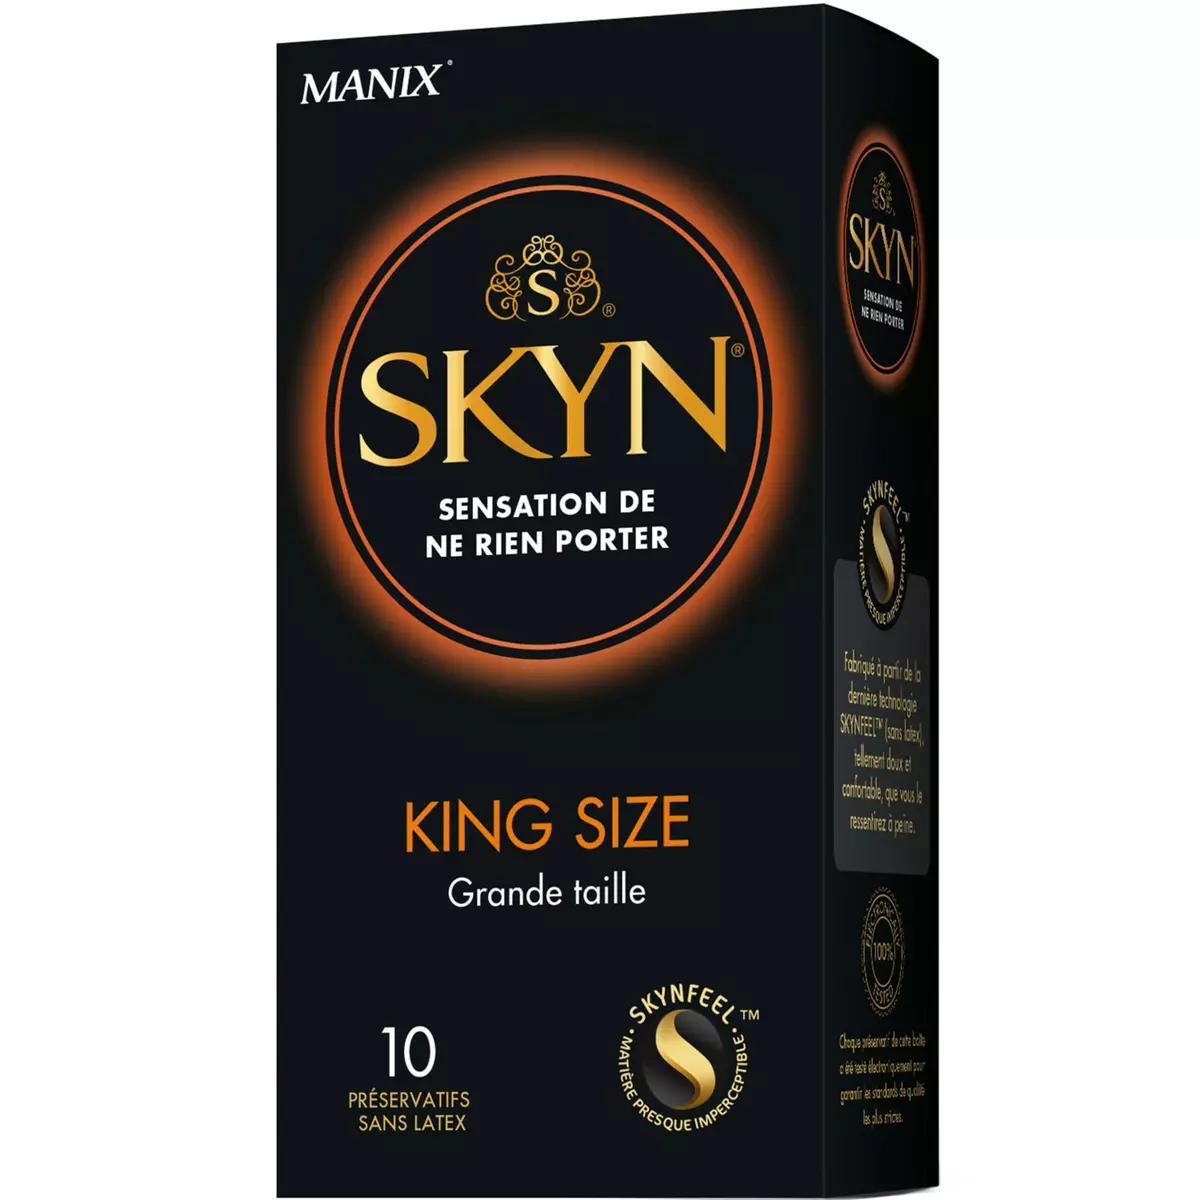 MANIX Skyn préservatifs sans latex grande taille 10 préservatifs